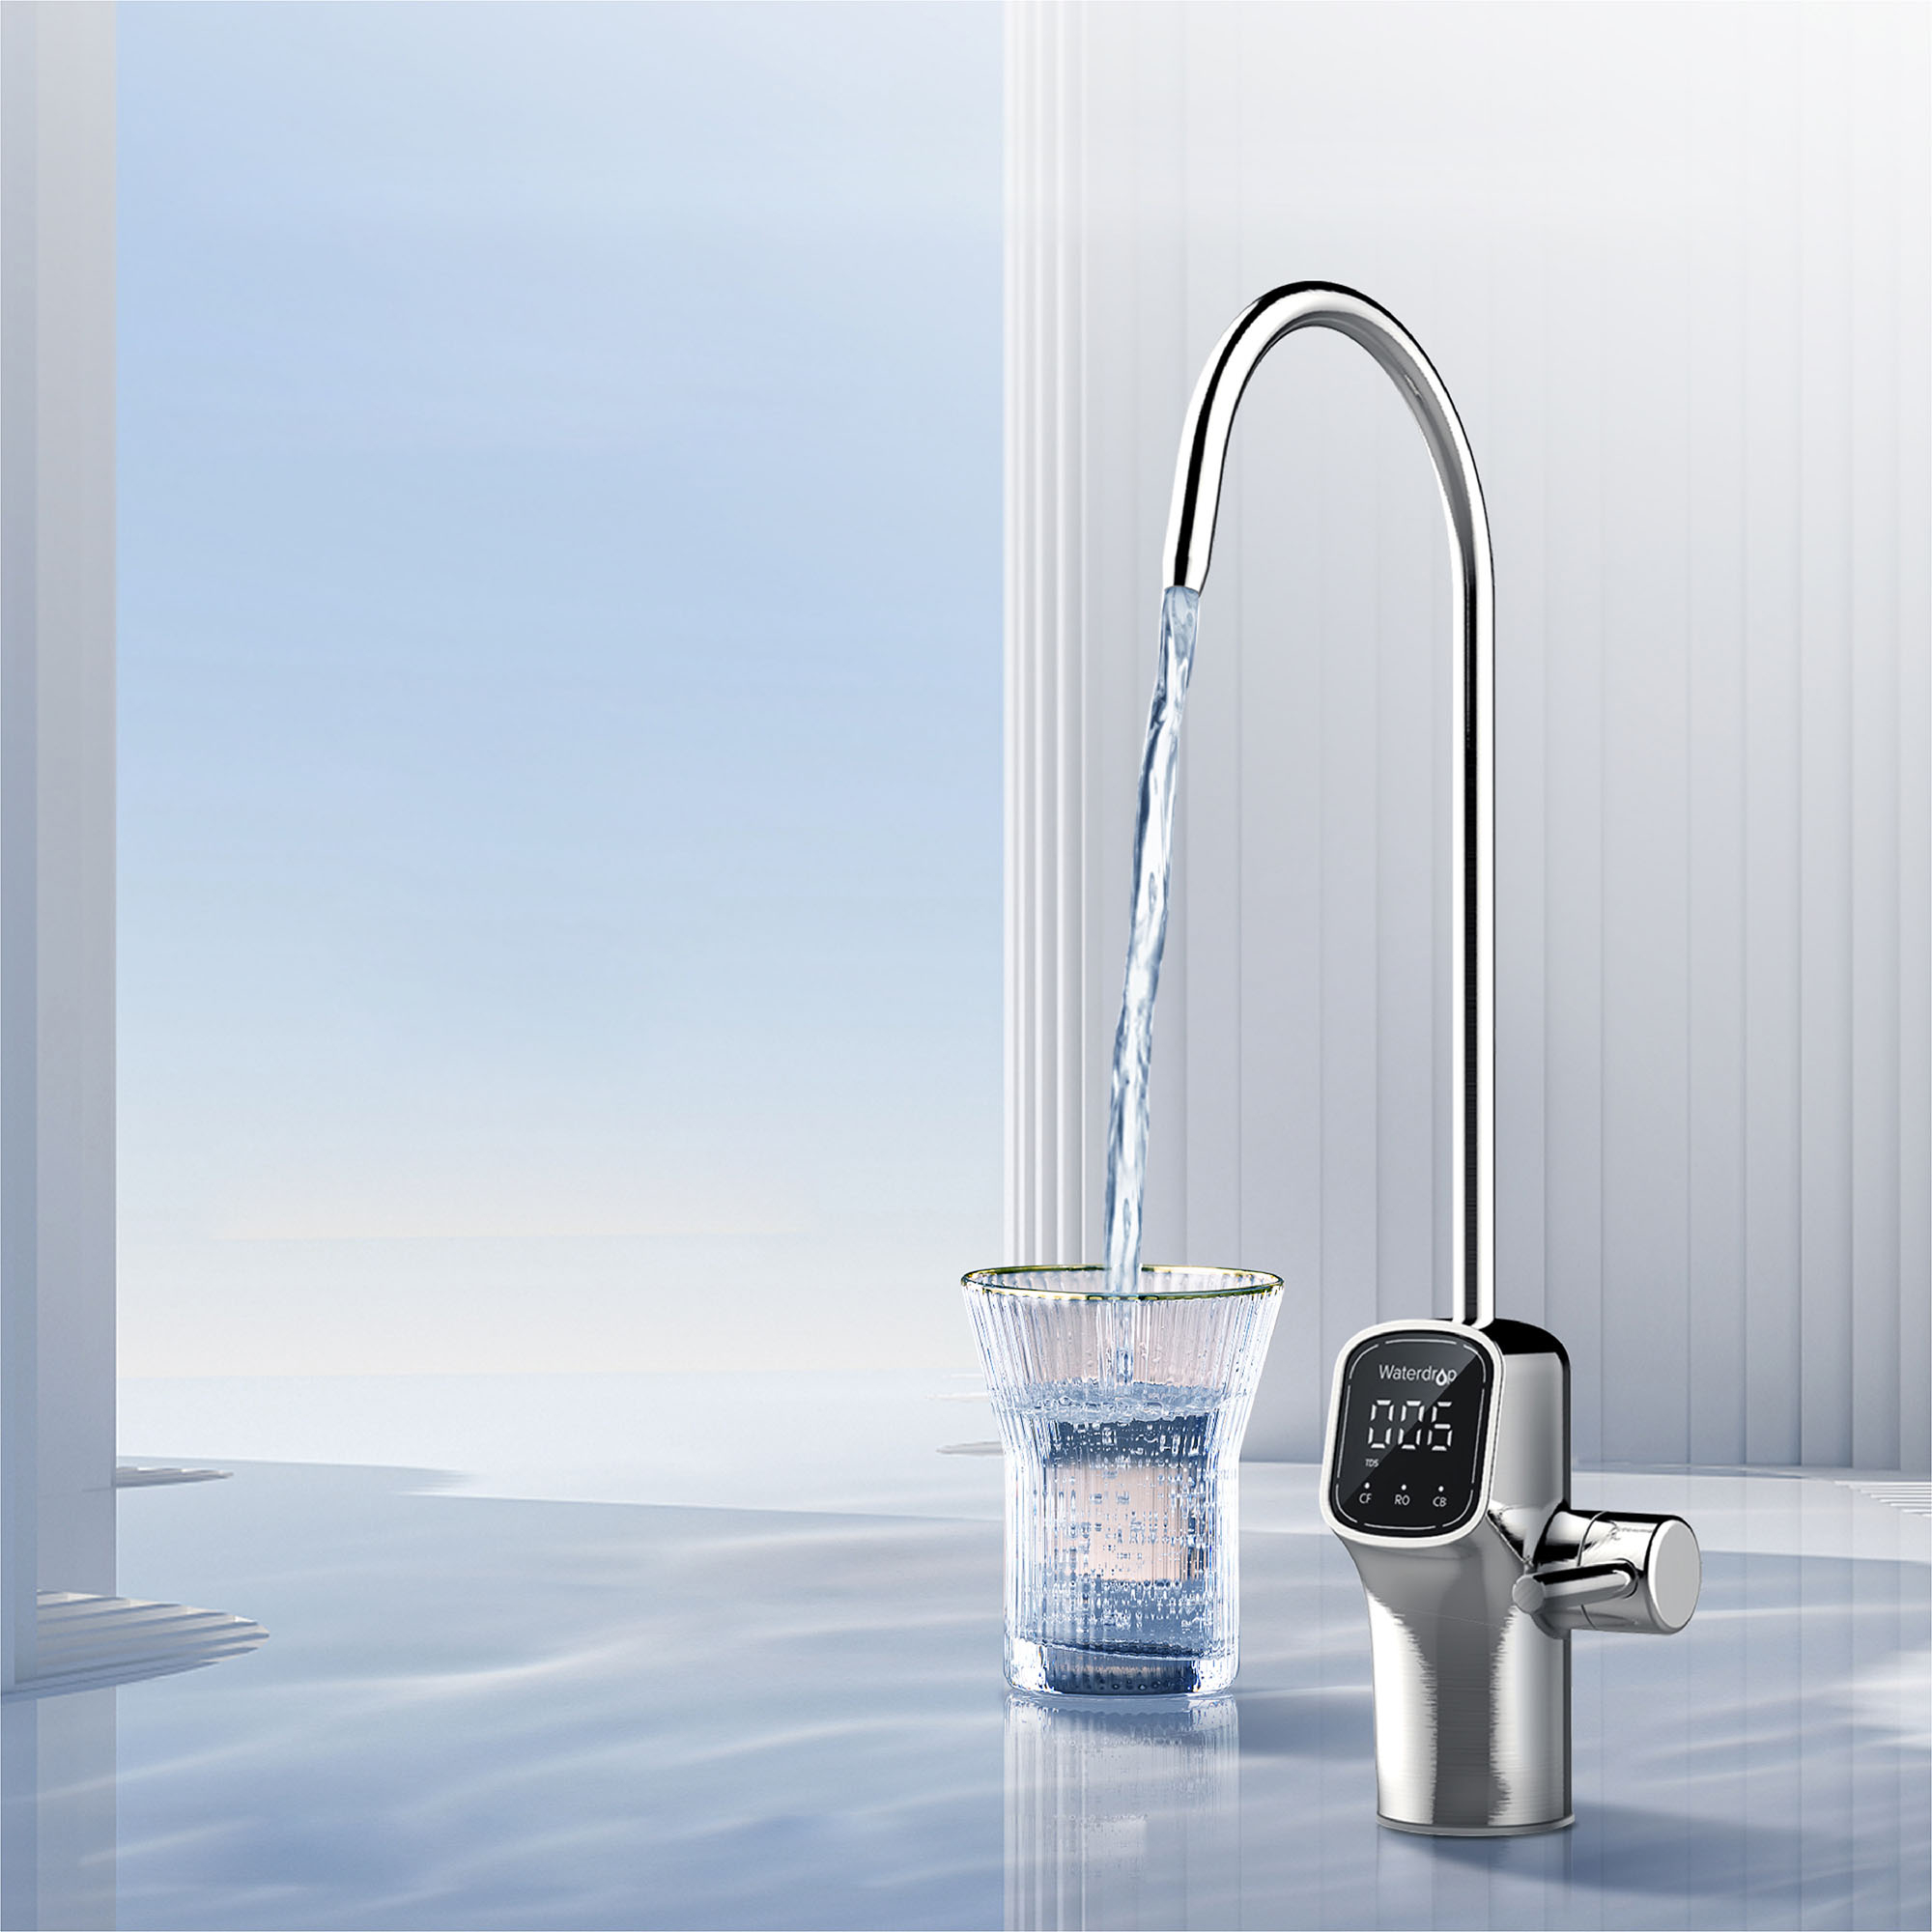 Reverse Osmosis System - Waterdrop G3P600